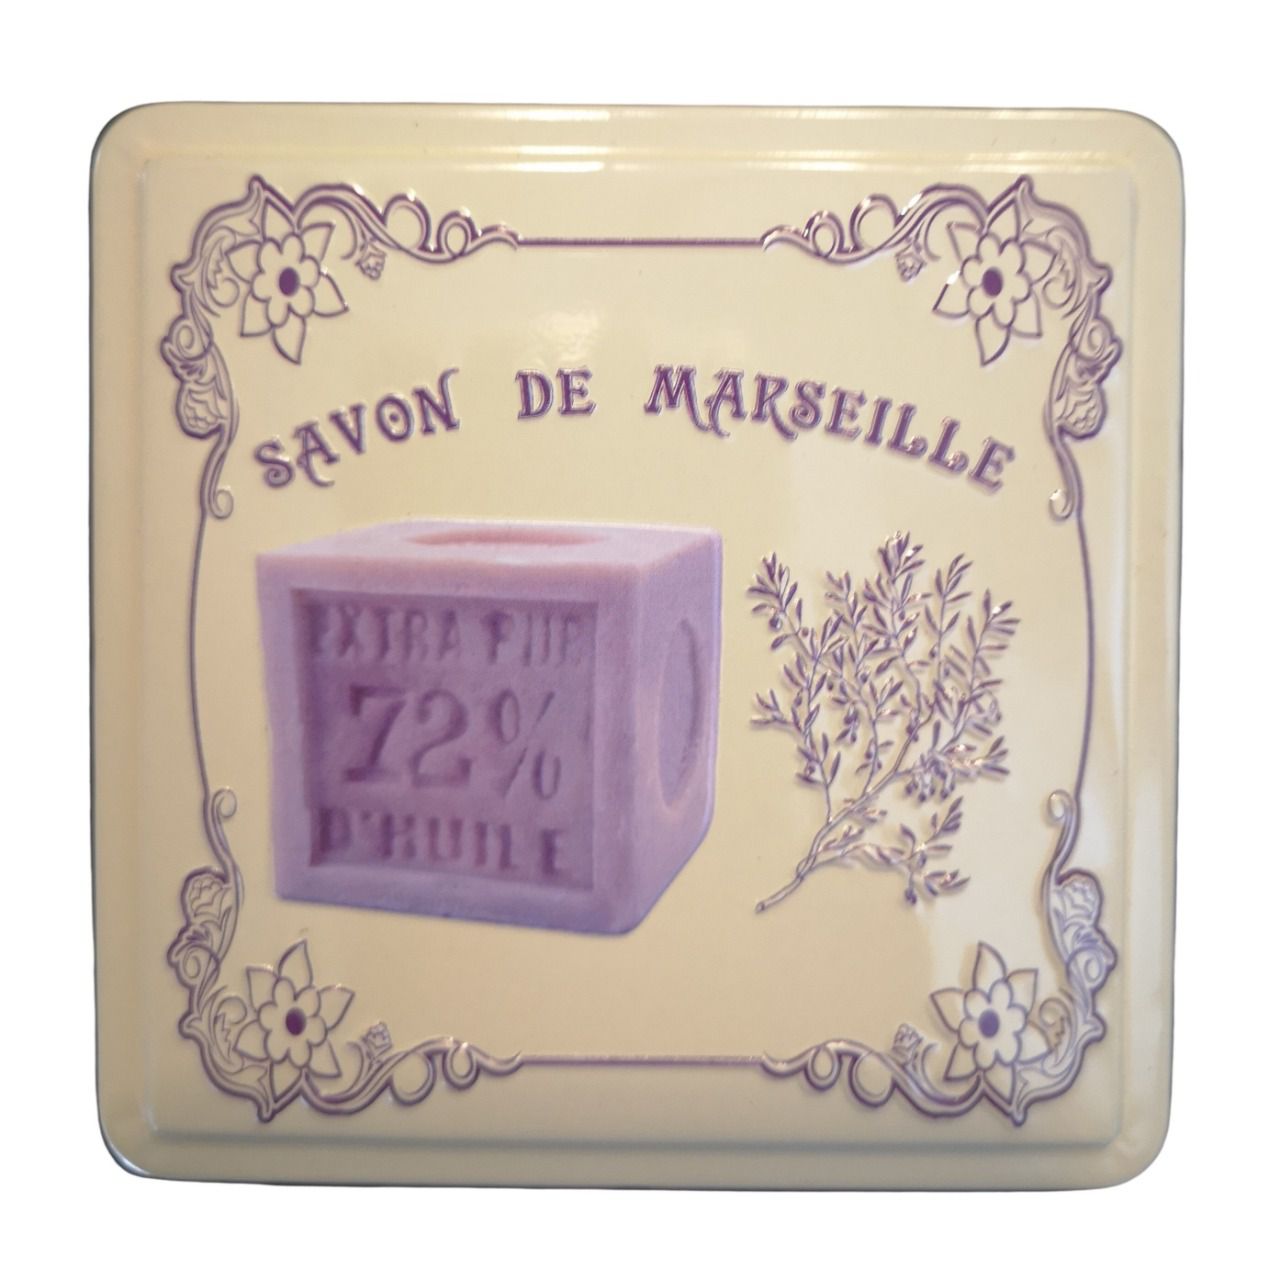 Boite à savon de Marseille métal cube crème